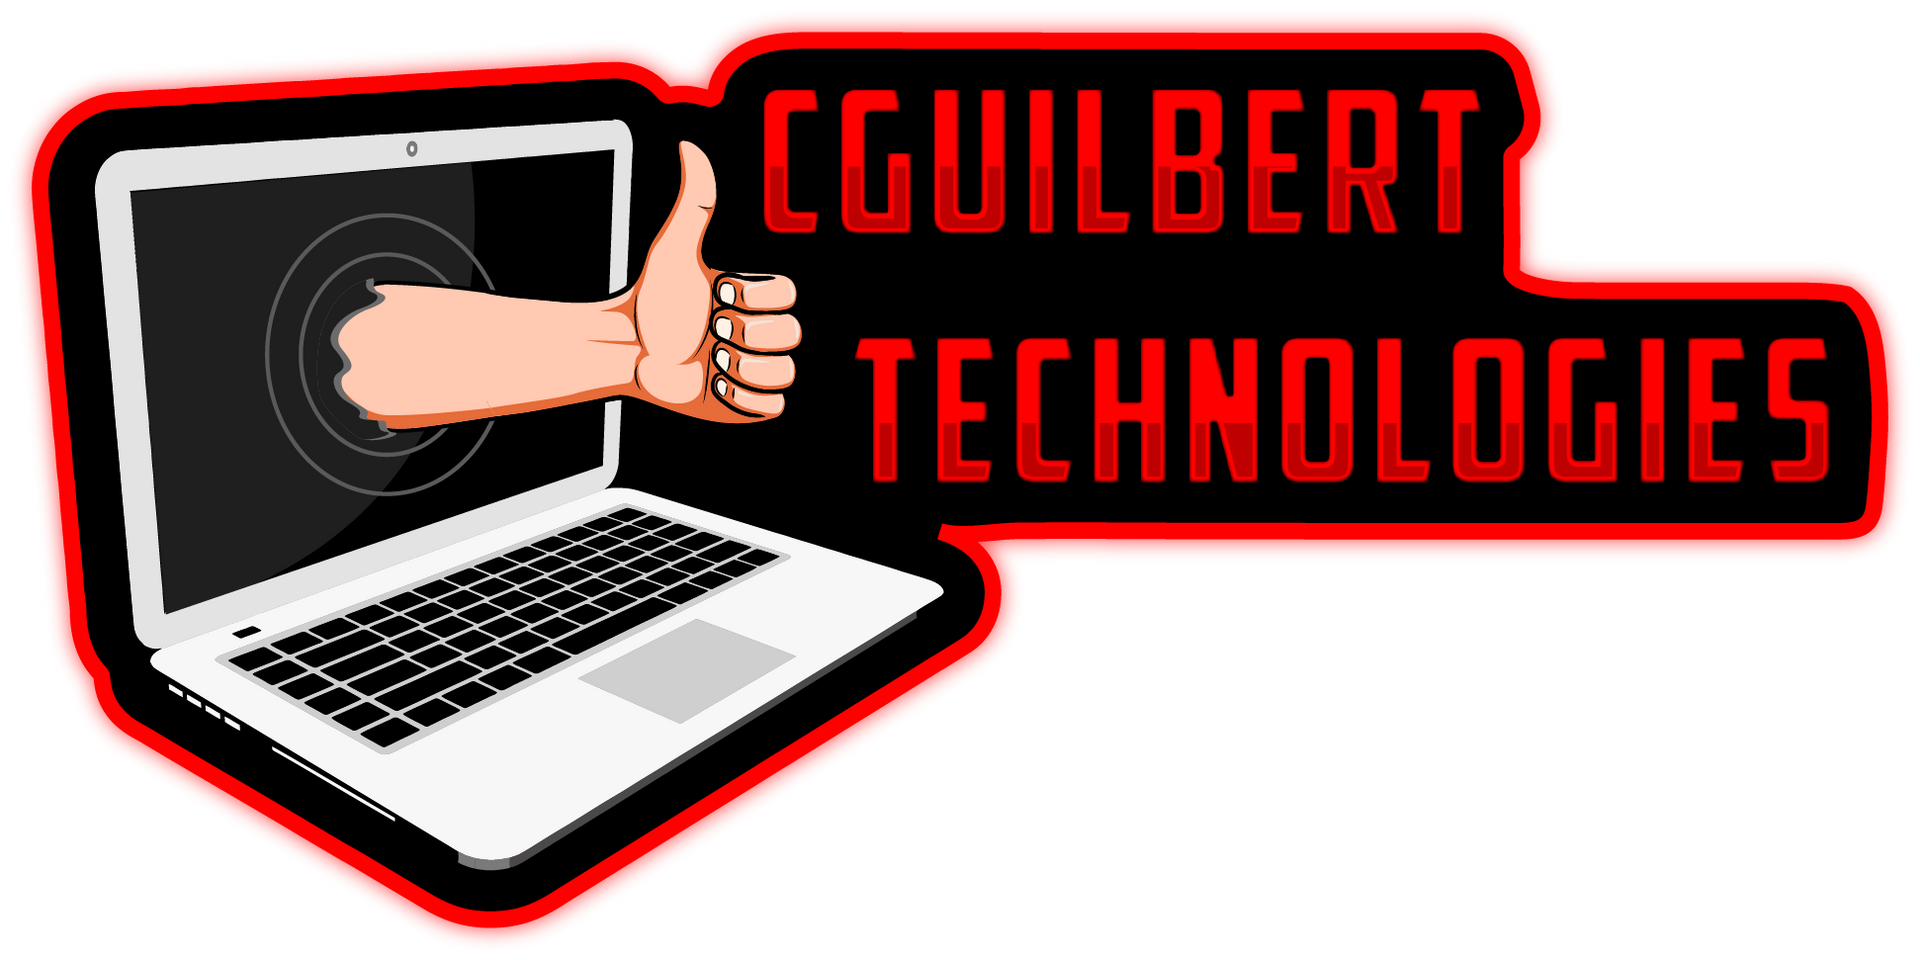 CGuilbert Technologies LLC